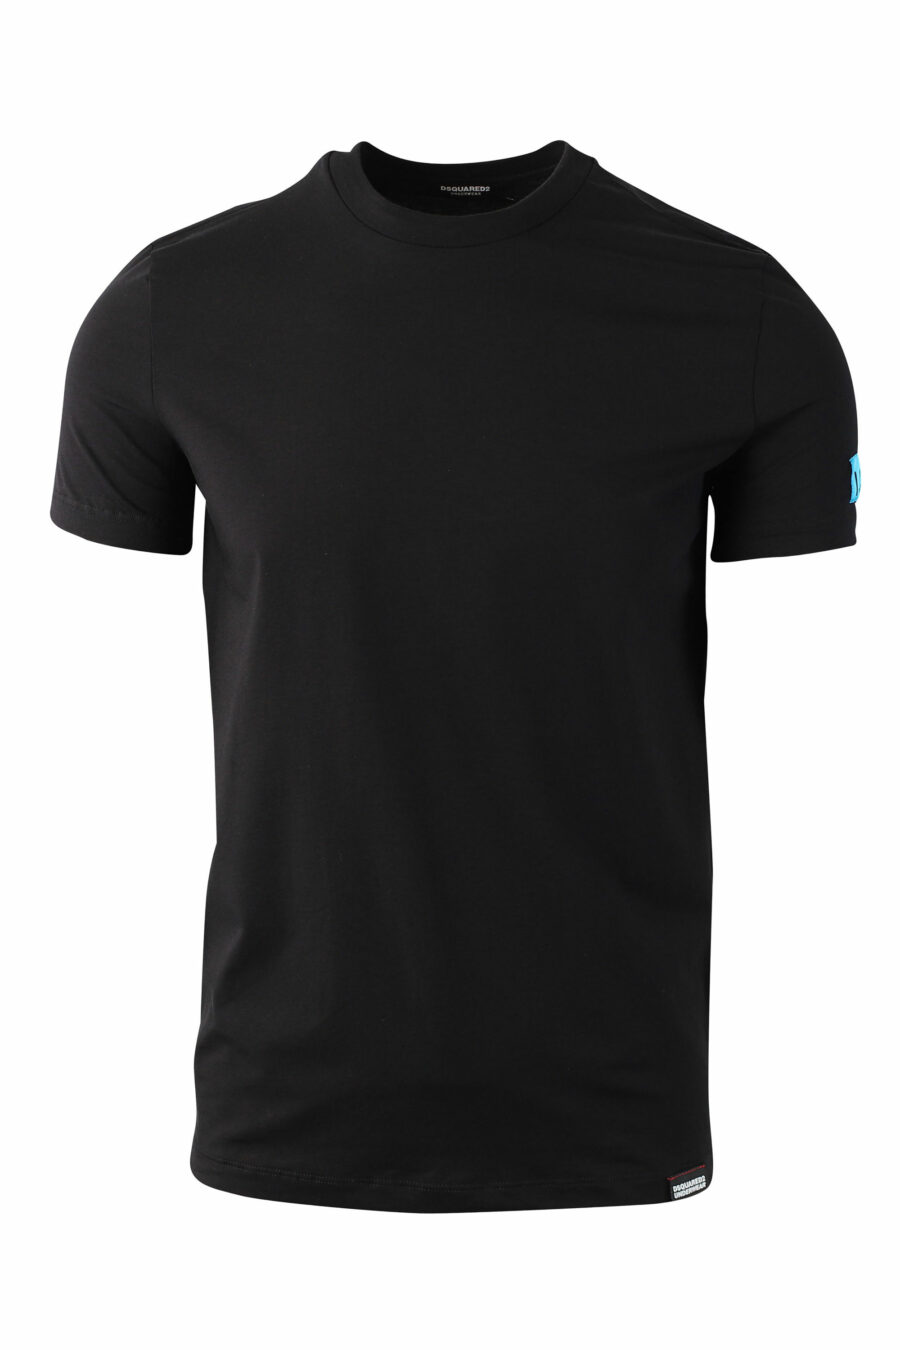 Schwarzes T-Shirt mit blauem Mini-Logo "Icon" auf dem Ärmel - IMG 0038 1